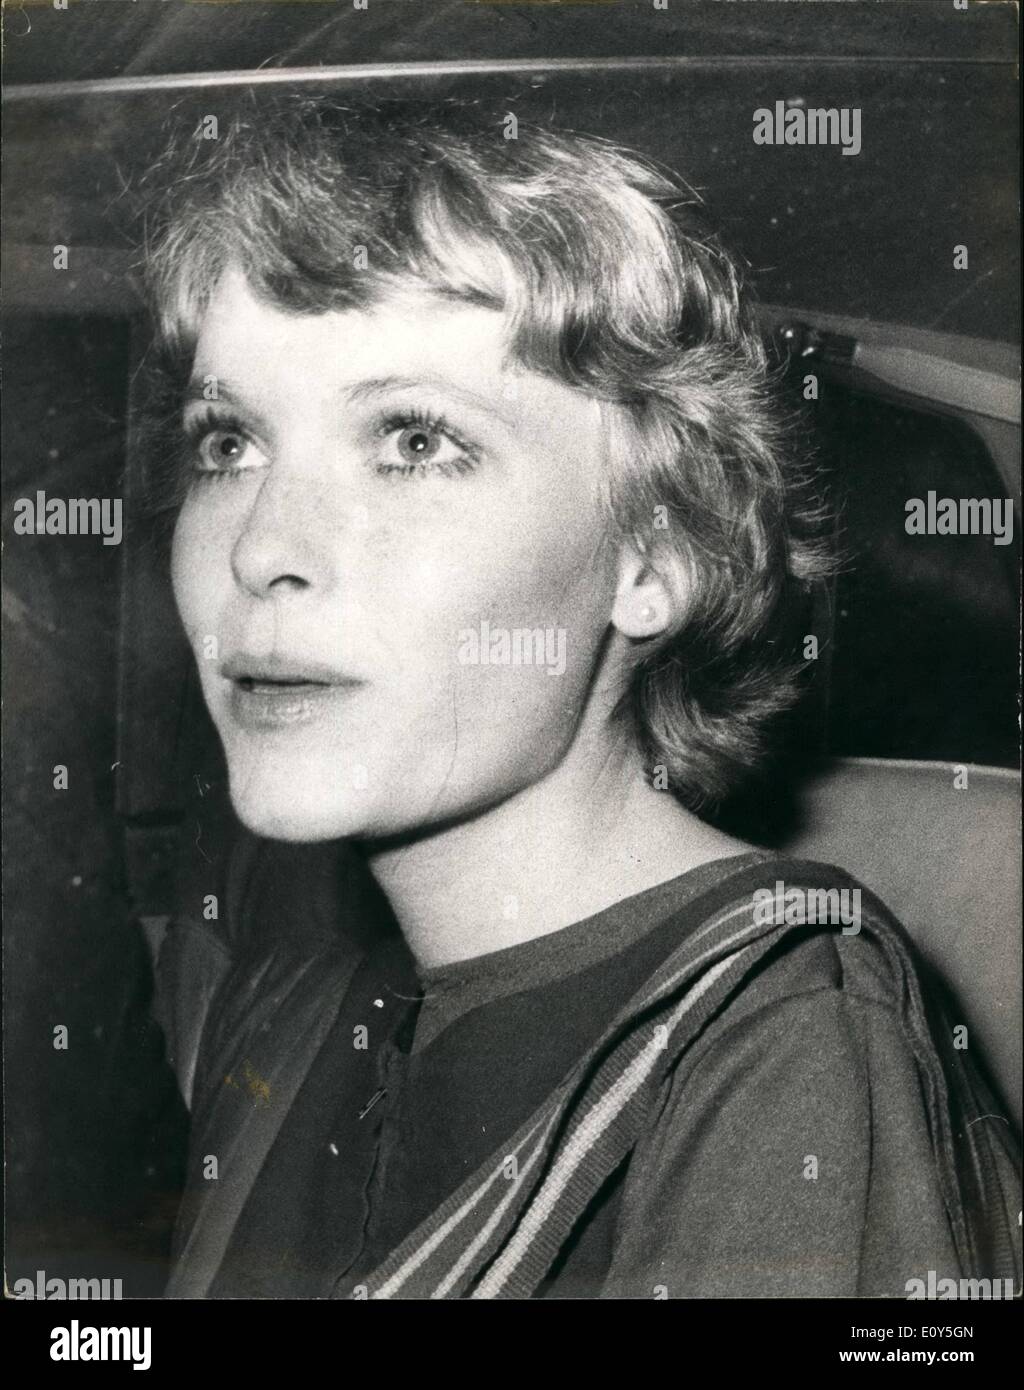 11 Nov, 1968 - Mia Farrow atiende Bow Street; Canadian Film productor Iain Quarrier apareció en Bow Street nuevamente hoy, acusado Foto de stock